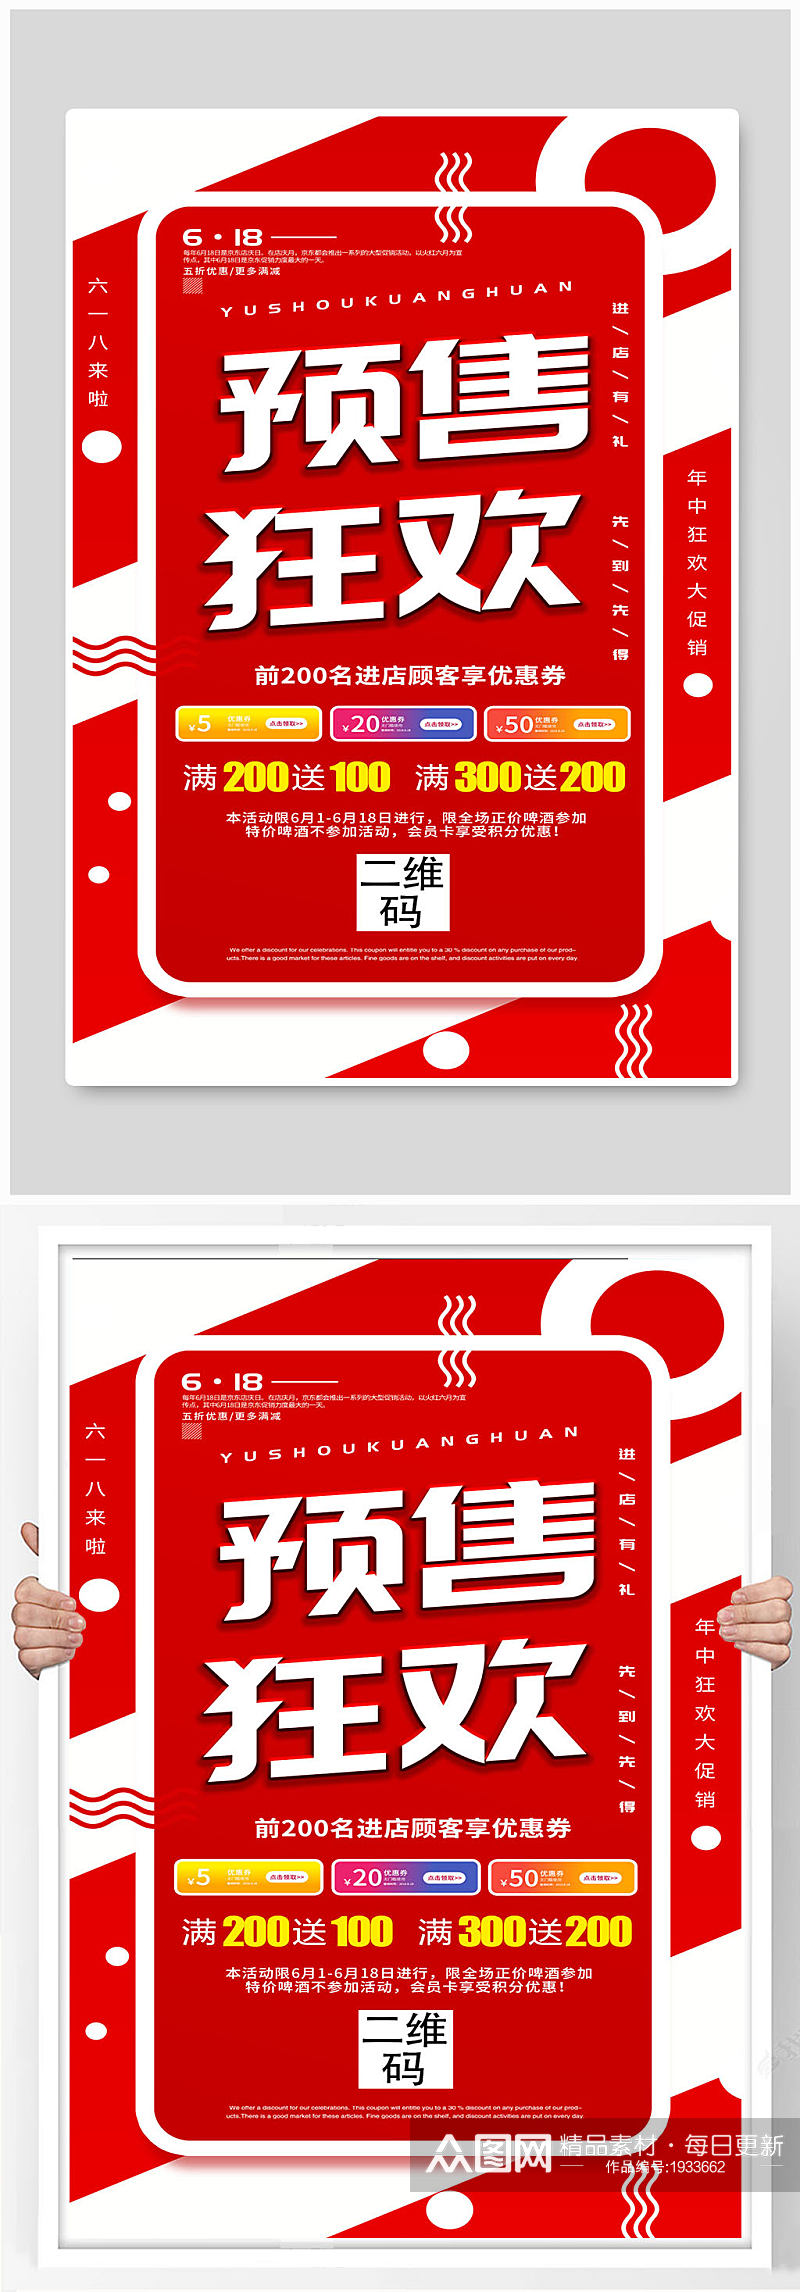 红色大气618购物商品促销宣传海报素材